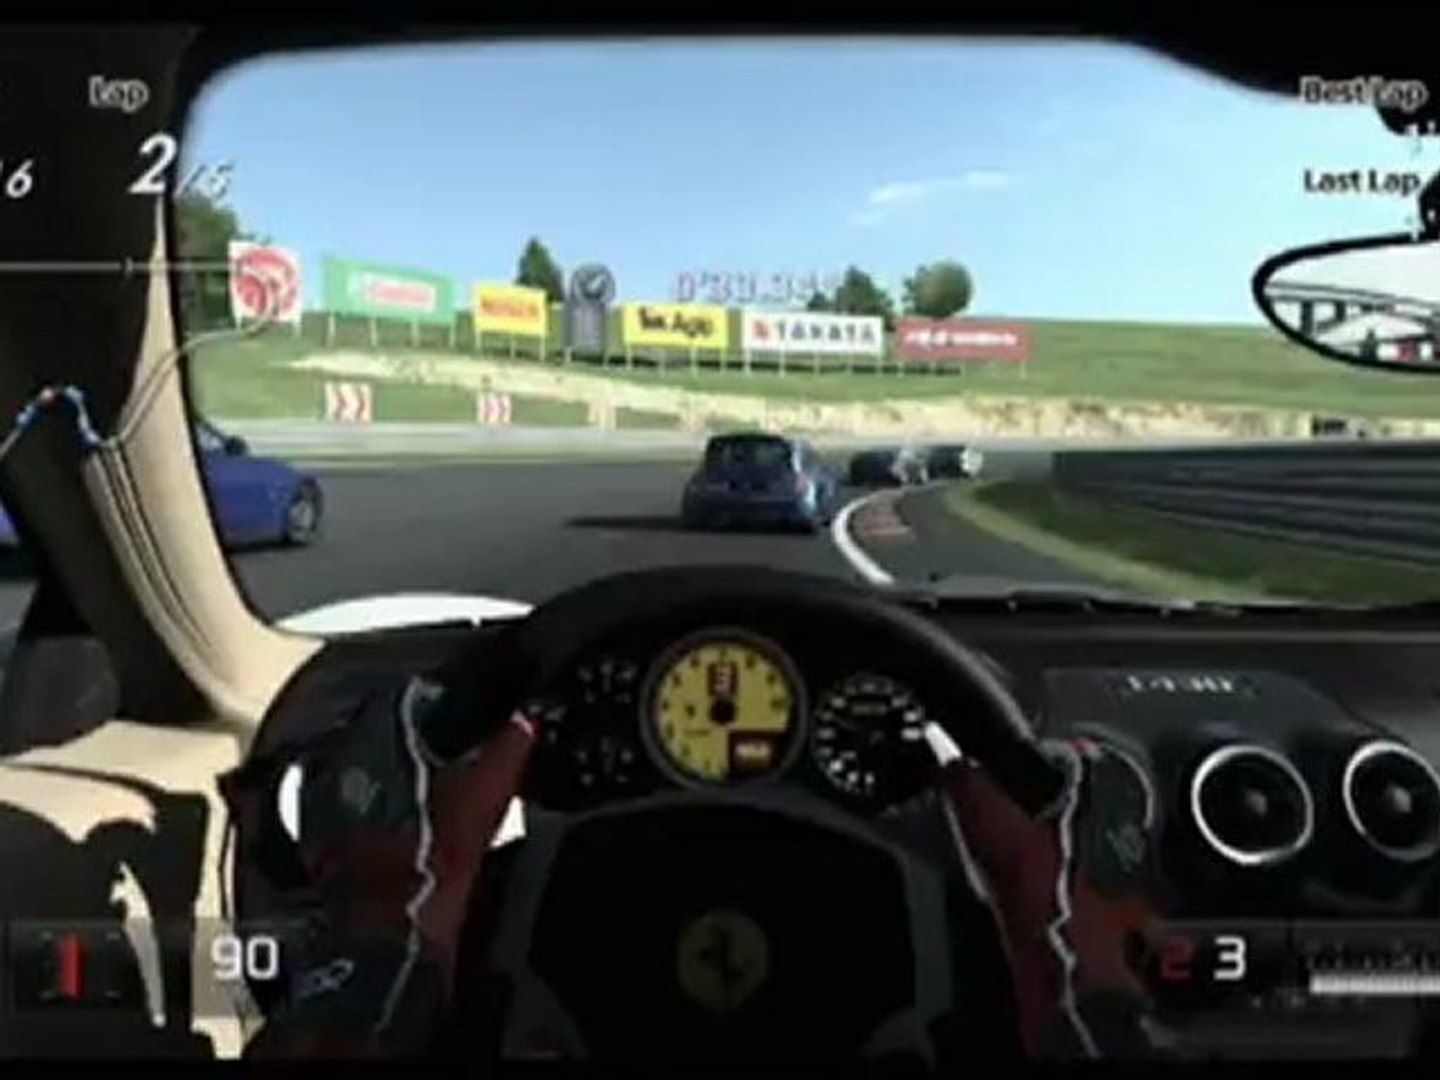 PS2 Game Bundle Gran Turismo 3 & 4 Ford Racing 2 Corvette